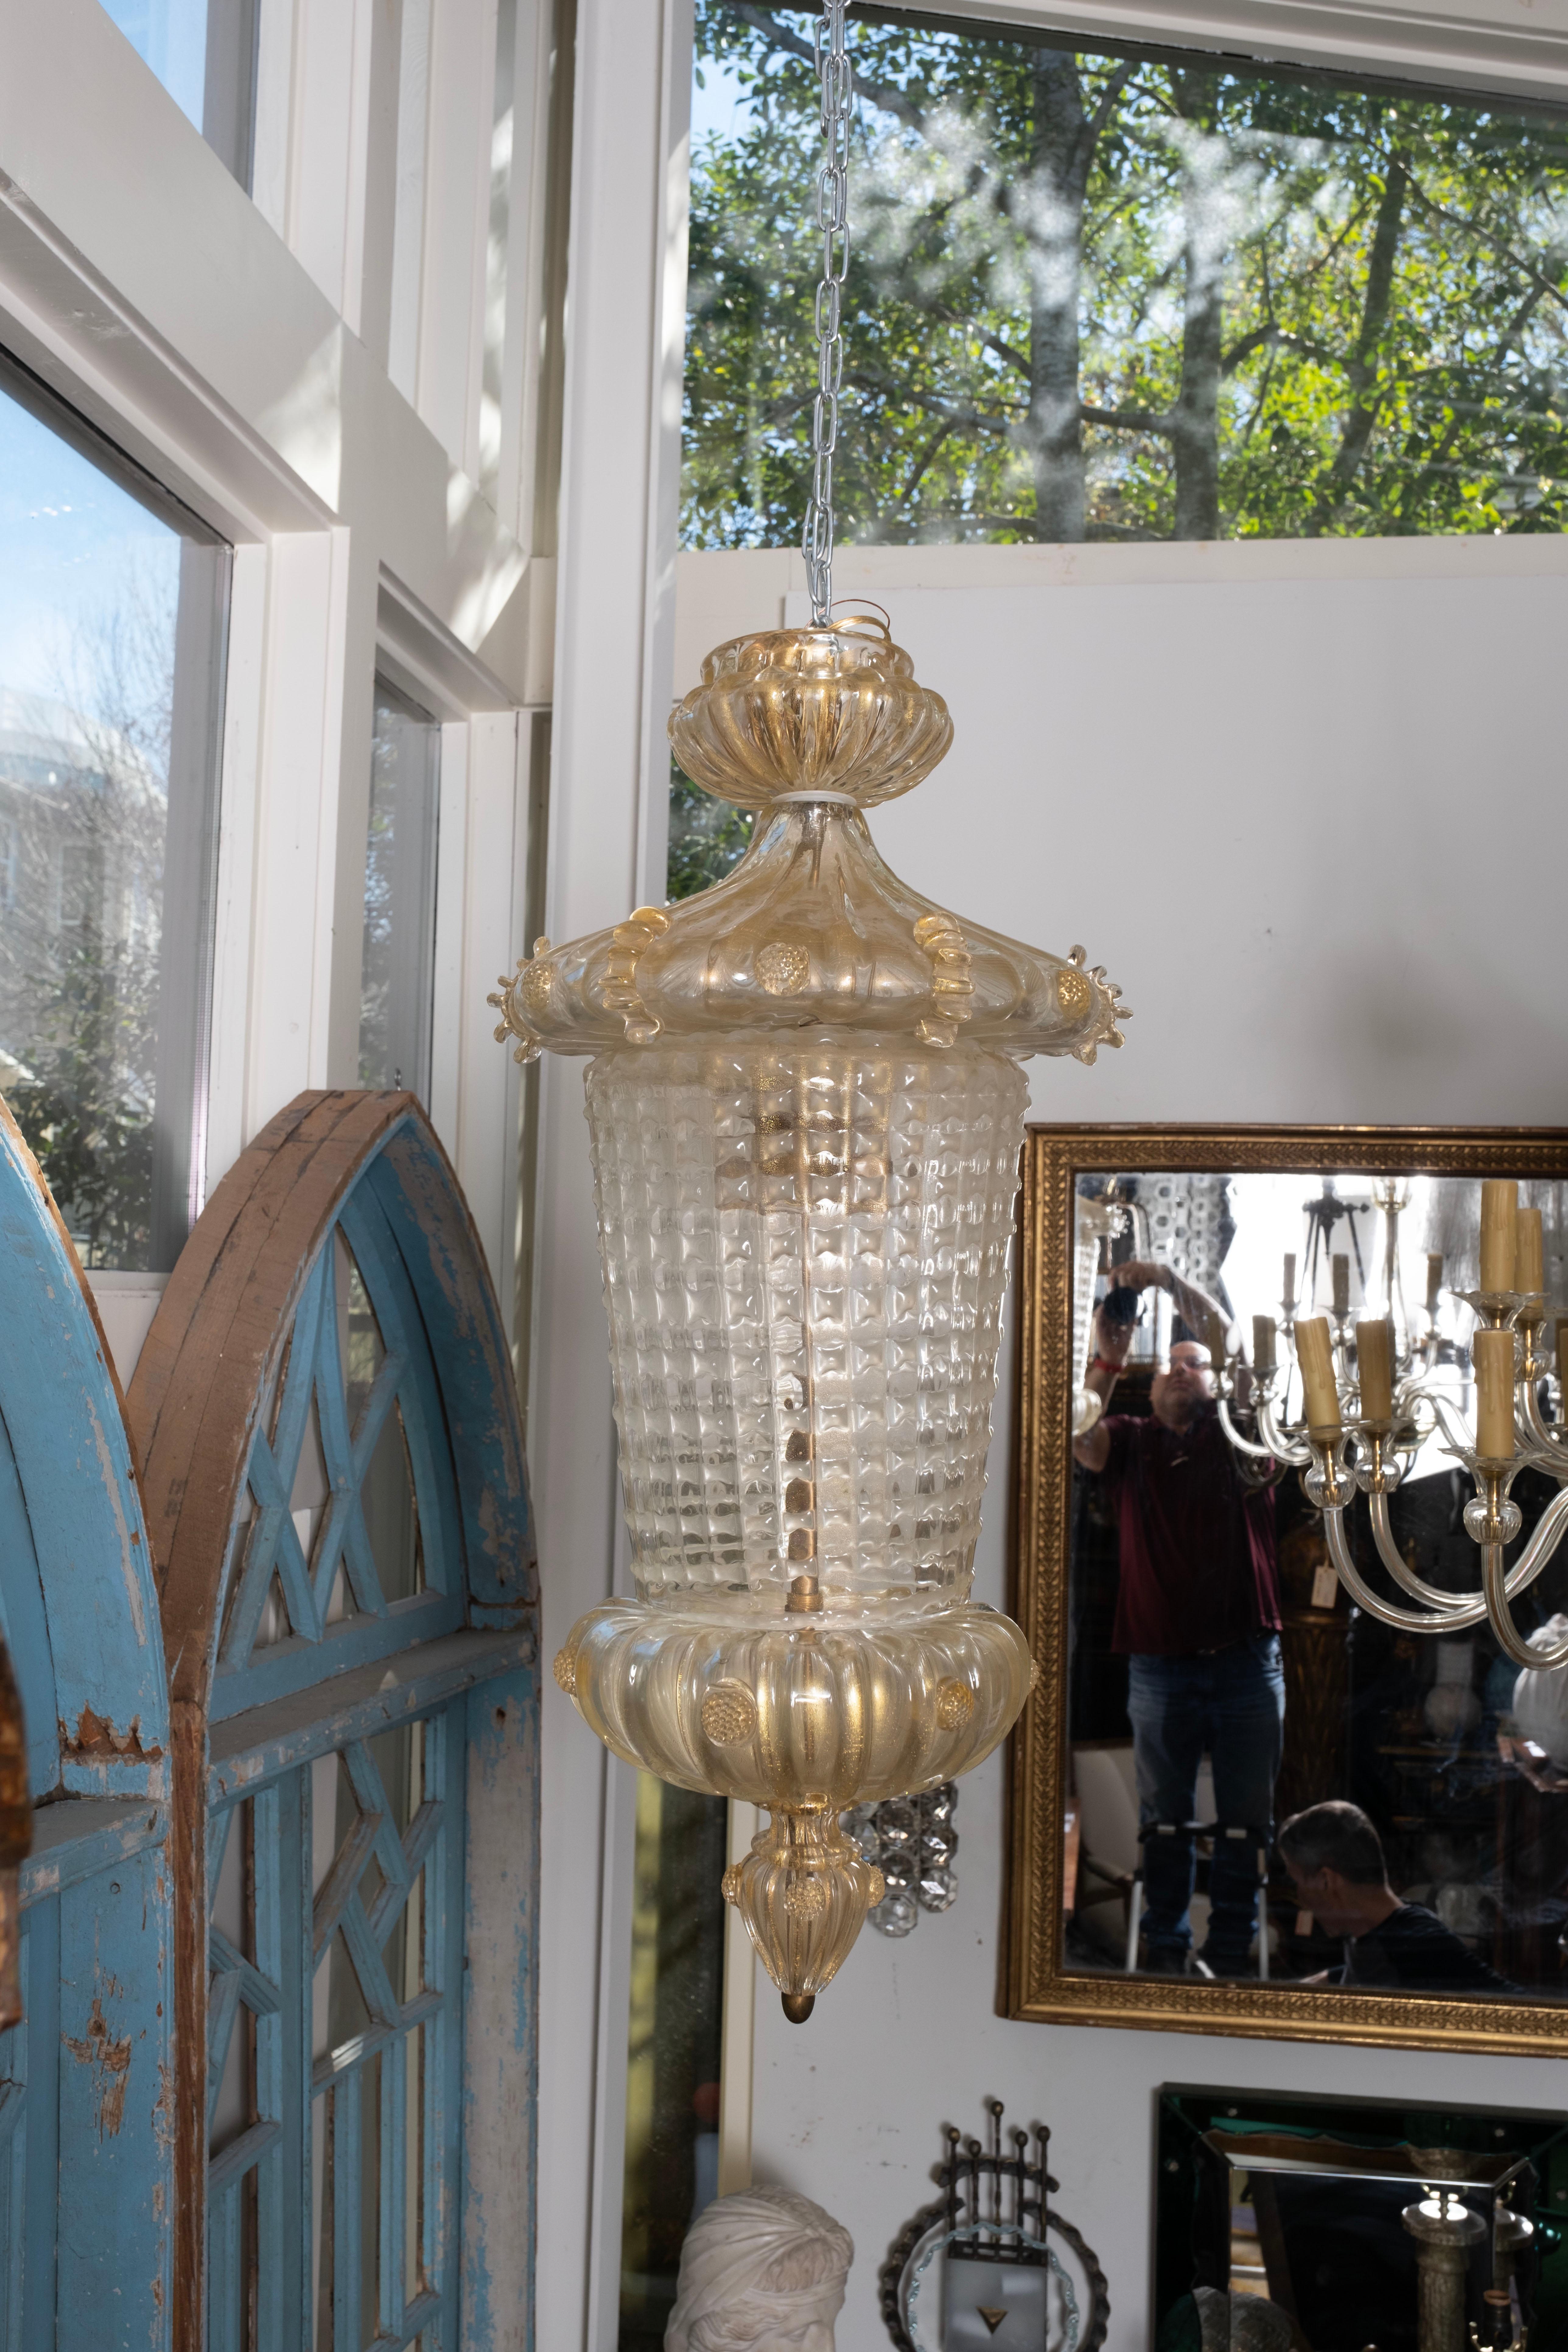 Lanterne en verre de Murano attribuée à Ercol Barovier.
Cette superbe lanterne de Murano attribuée par Barovier, vers 1940, est faite de verre clair avec des inclusions dorées et a été récemment câblée pour une utilisation aux États-Unis avec un fil